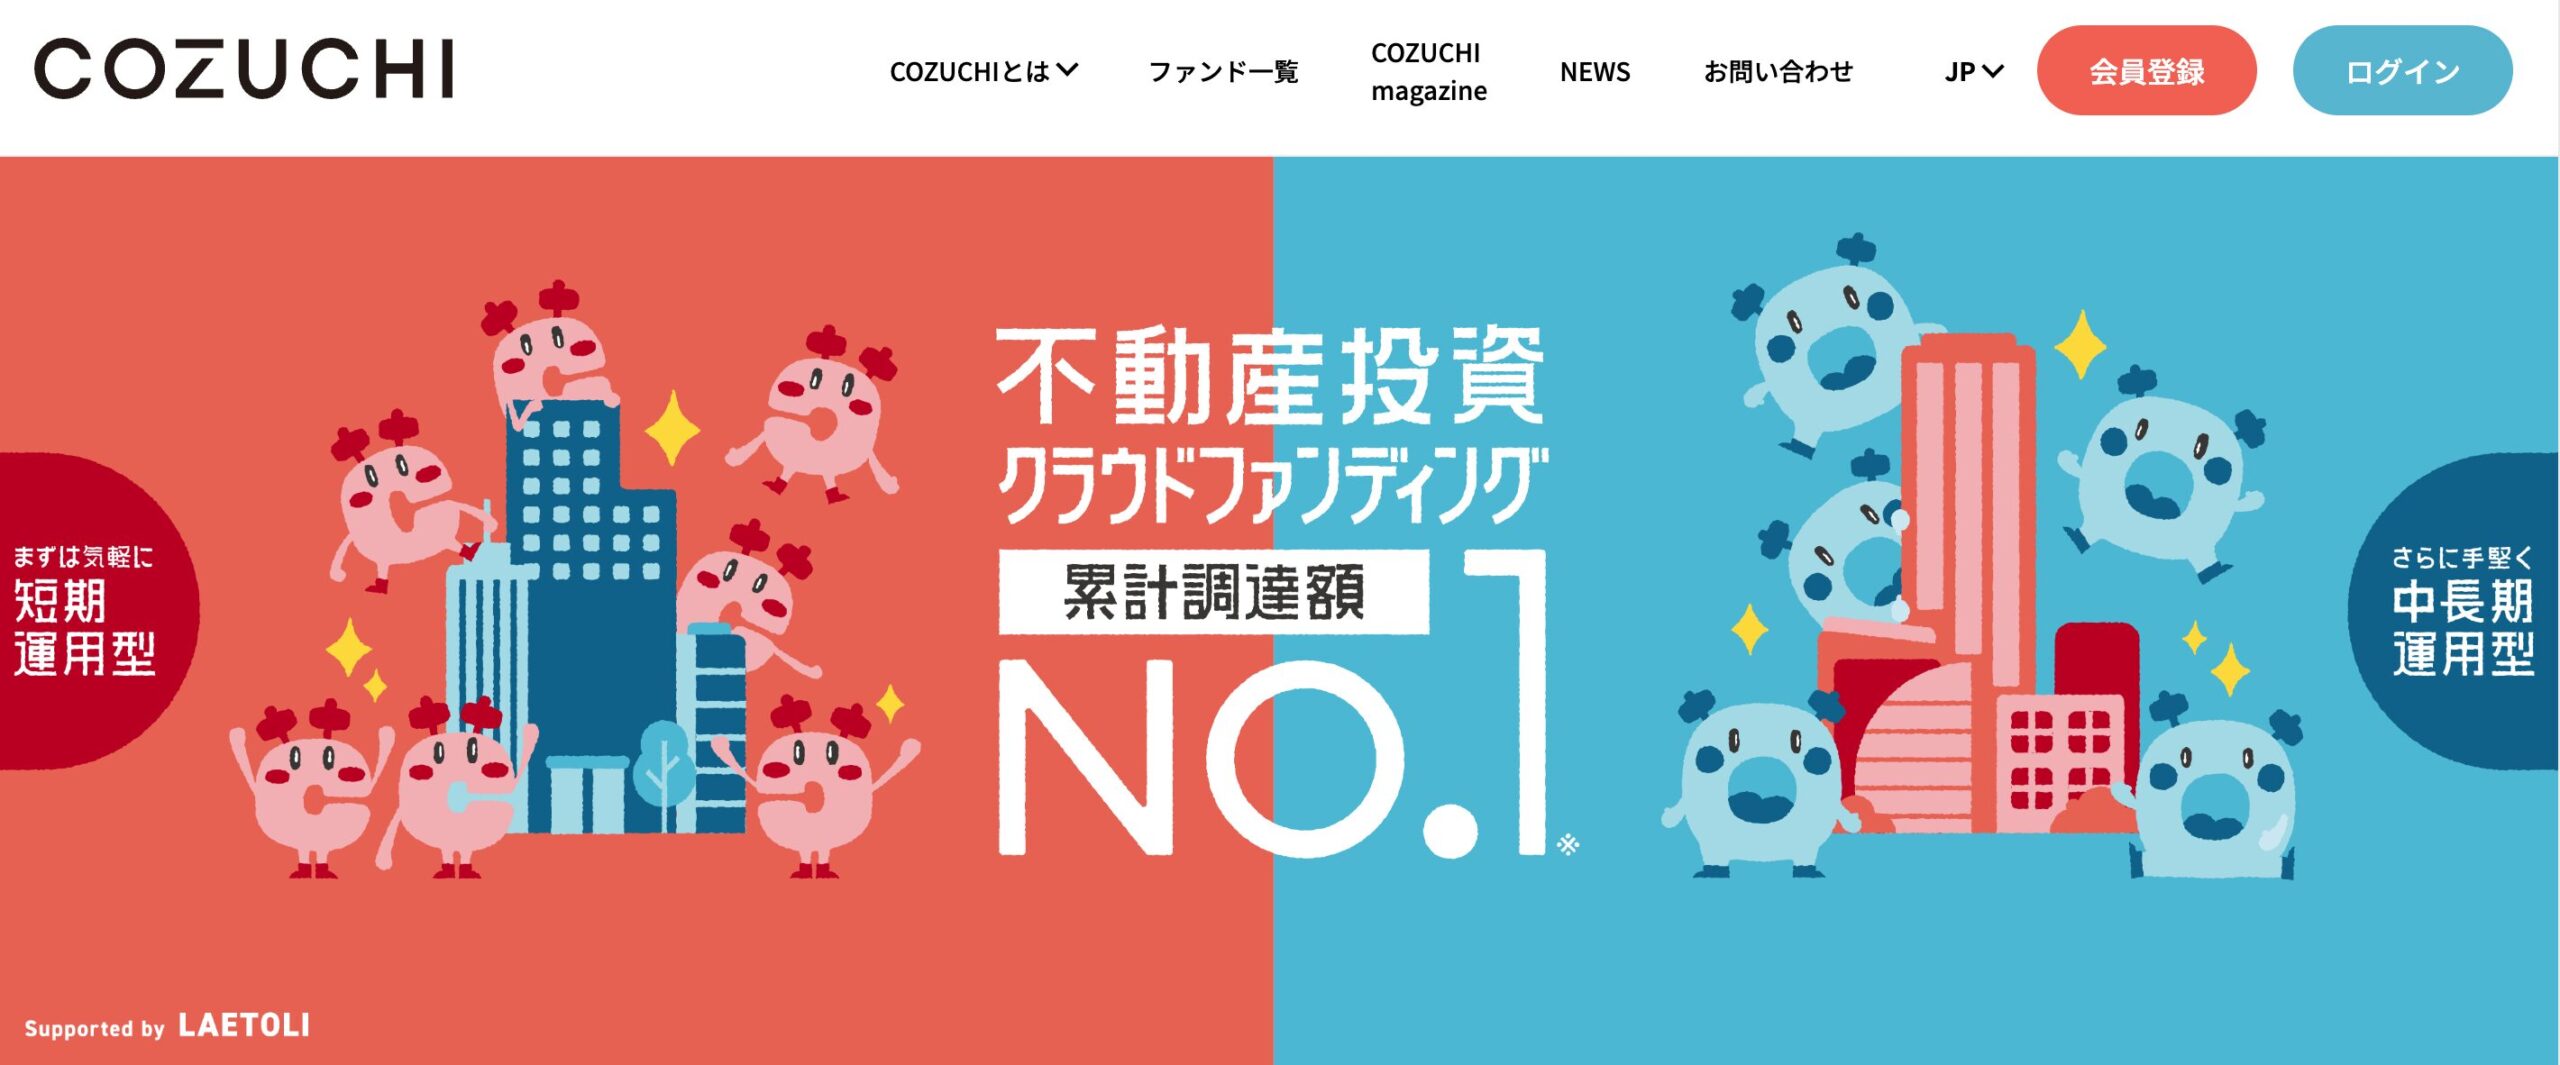 COZUCHI公式サイト